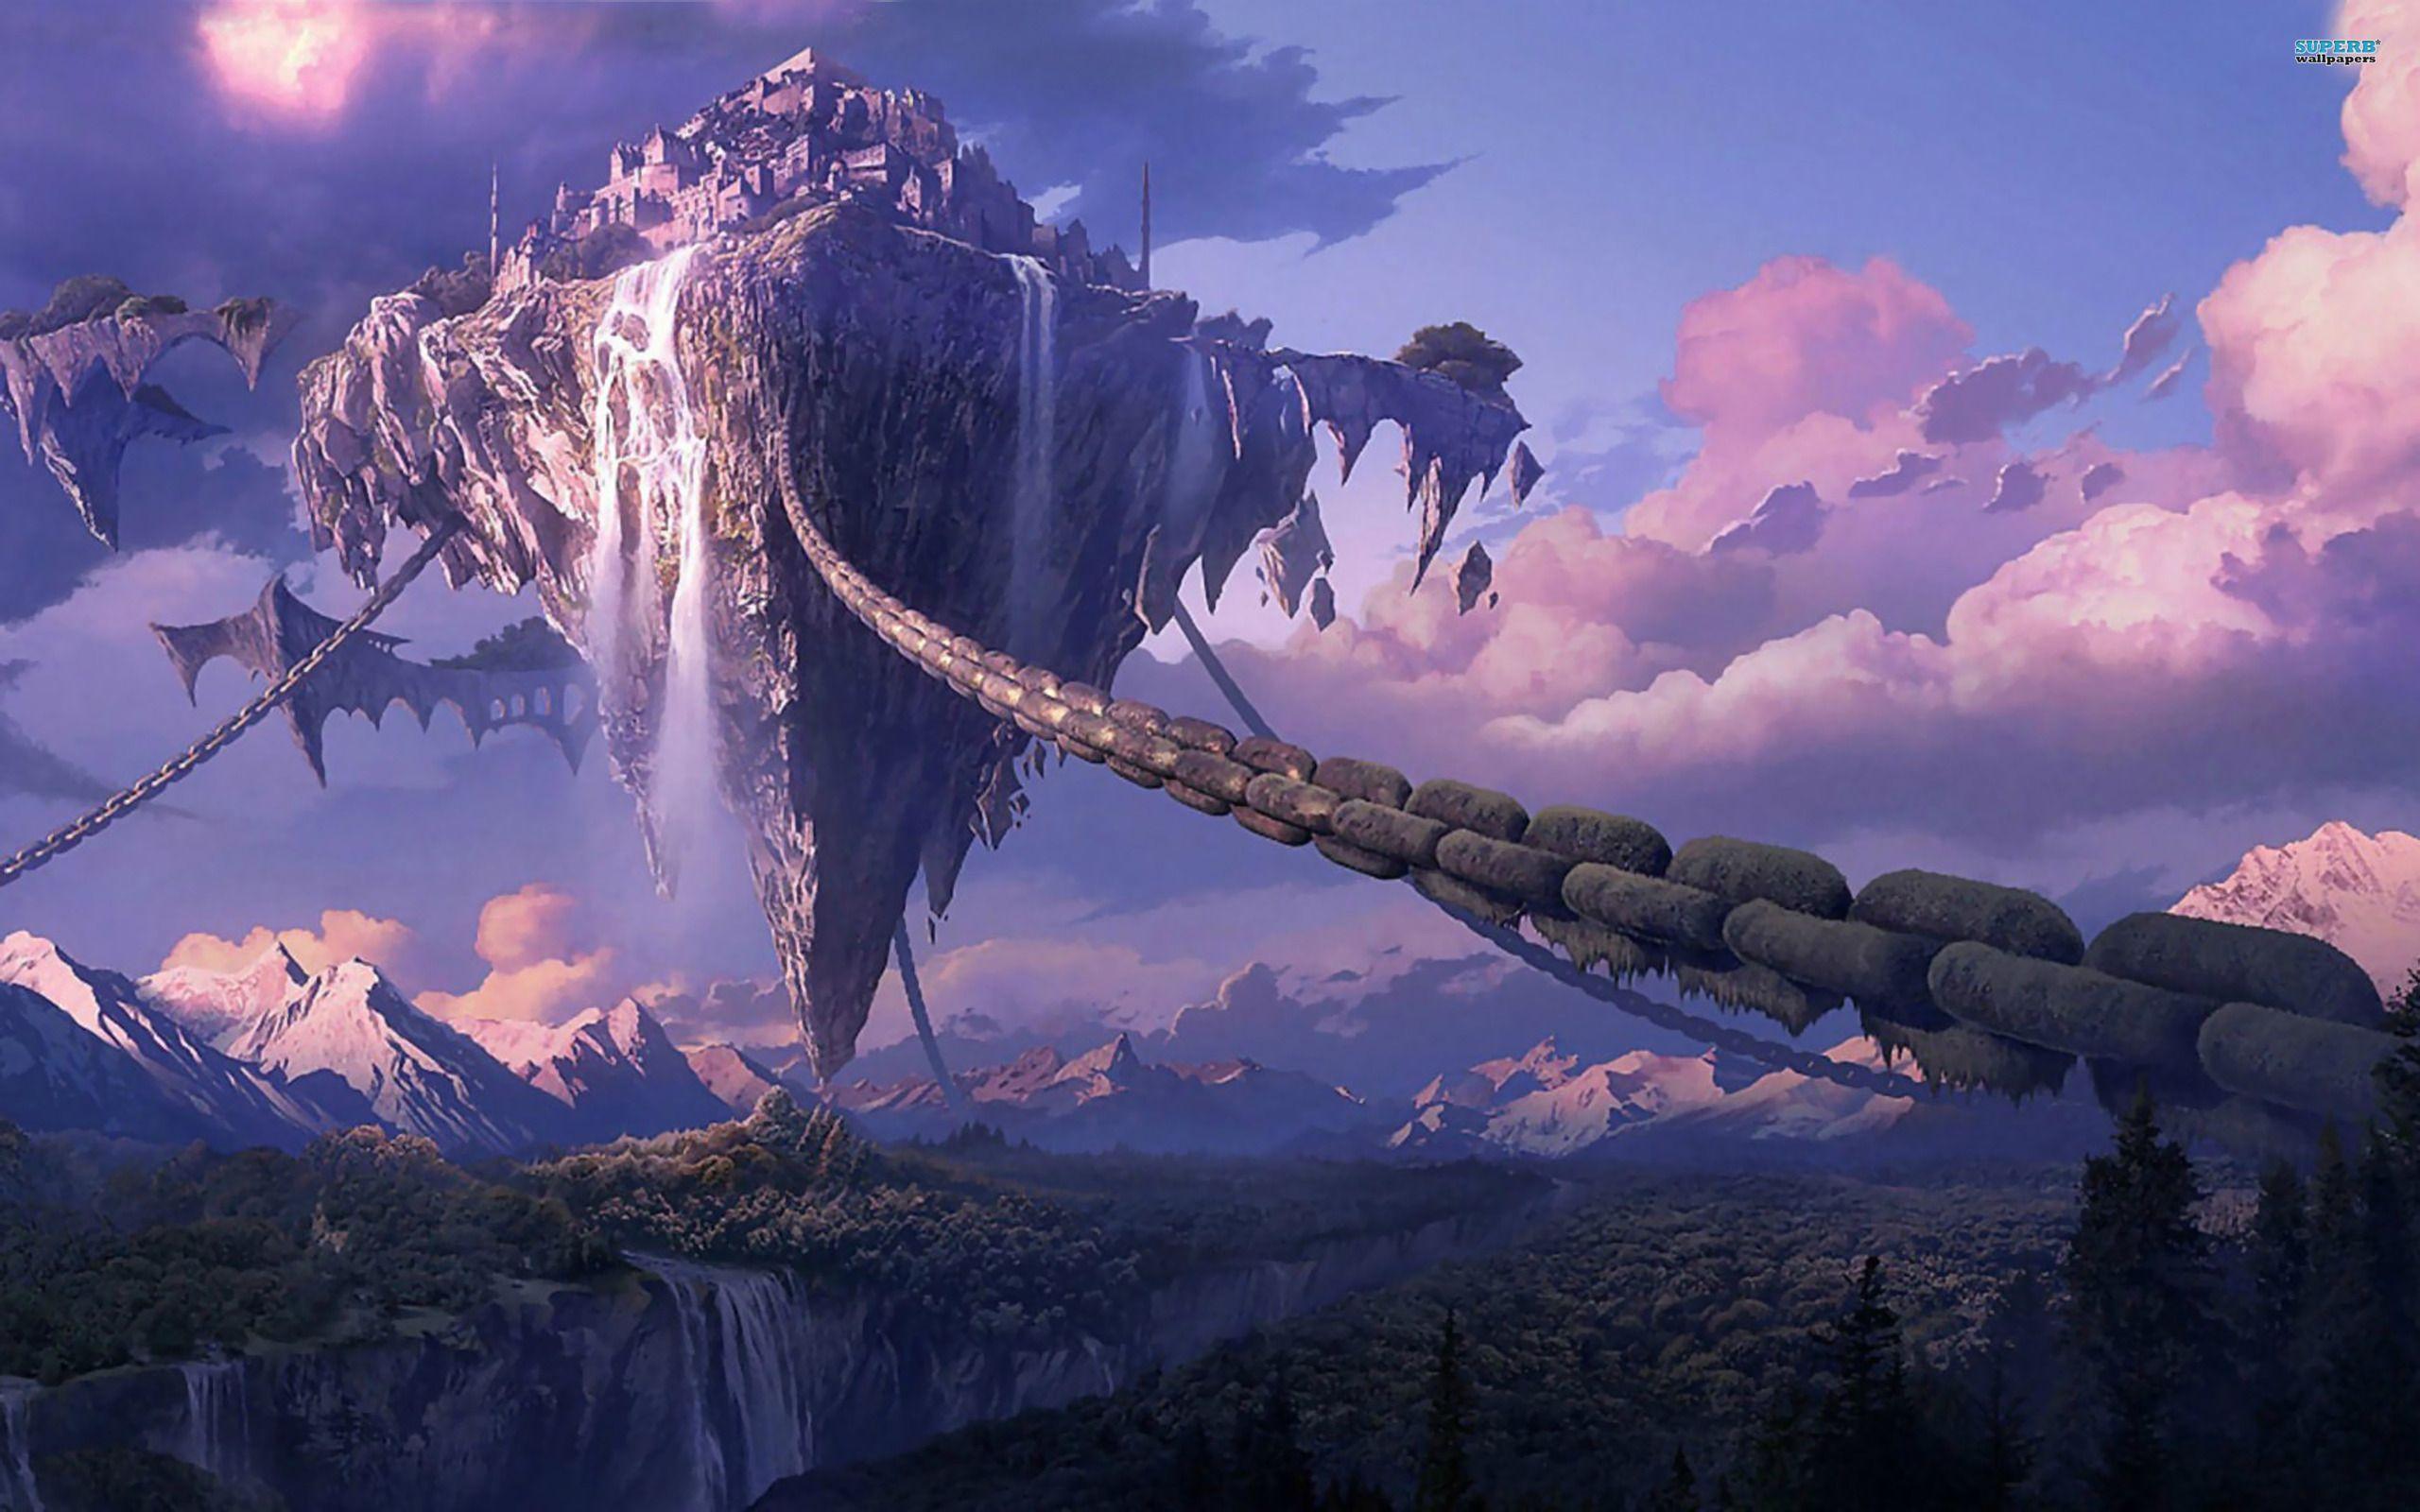 Wings of Fire Skywing Kingdom. Fantasy landscape